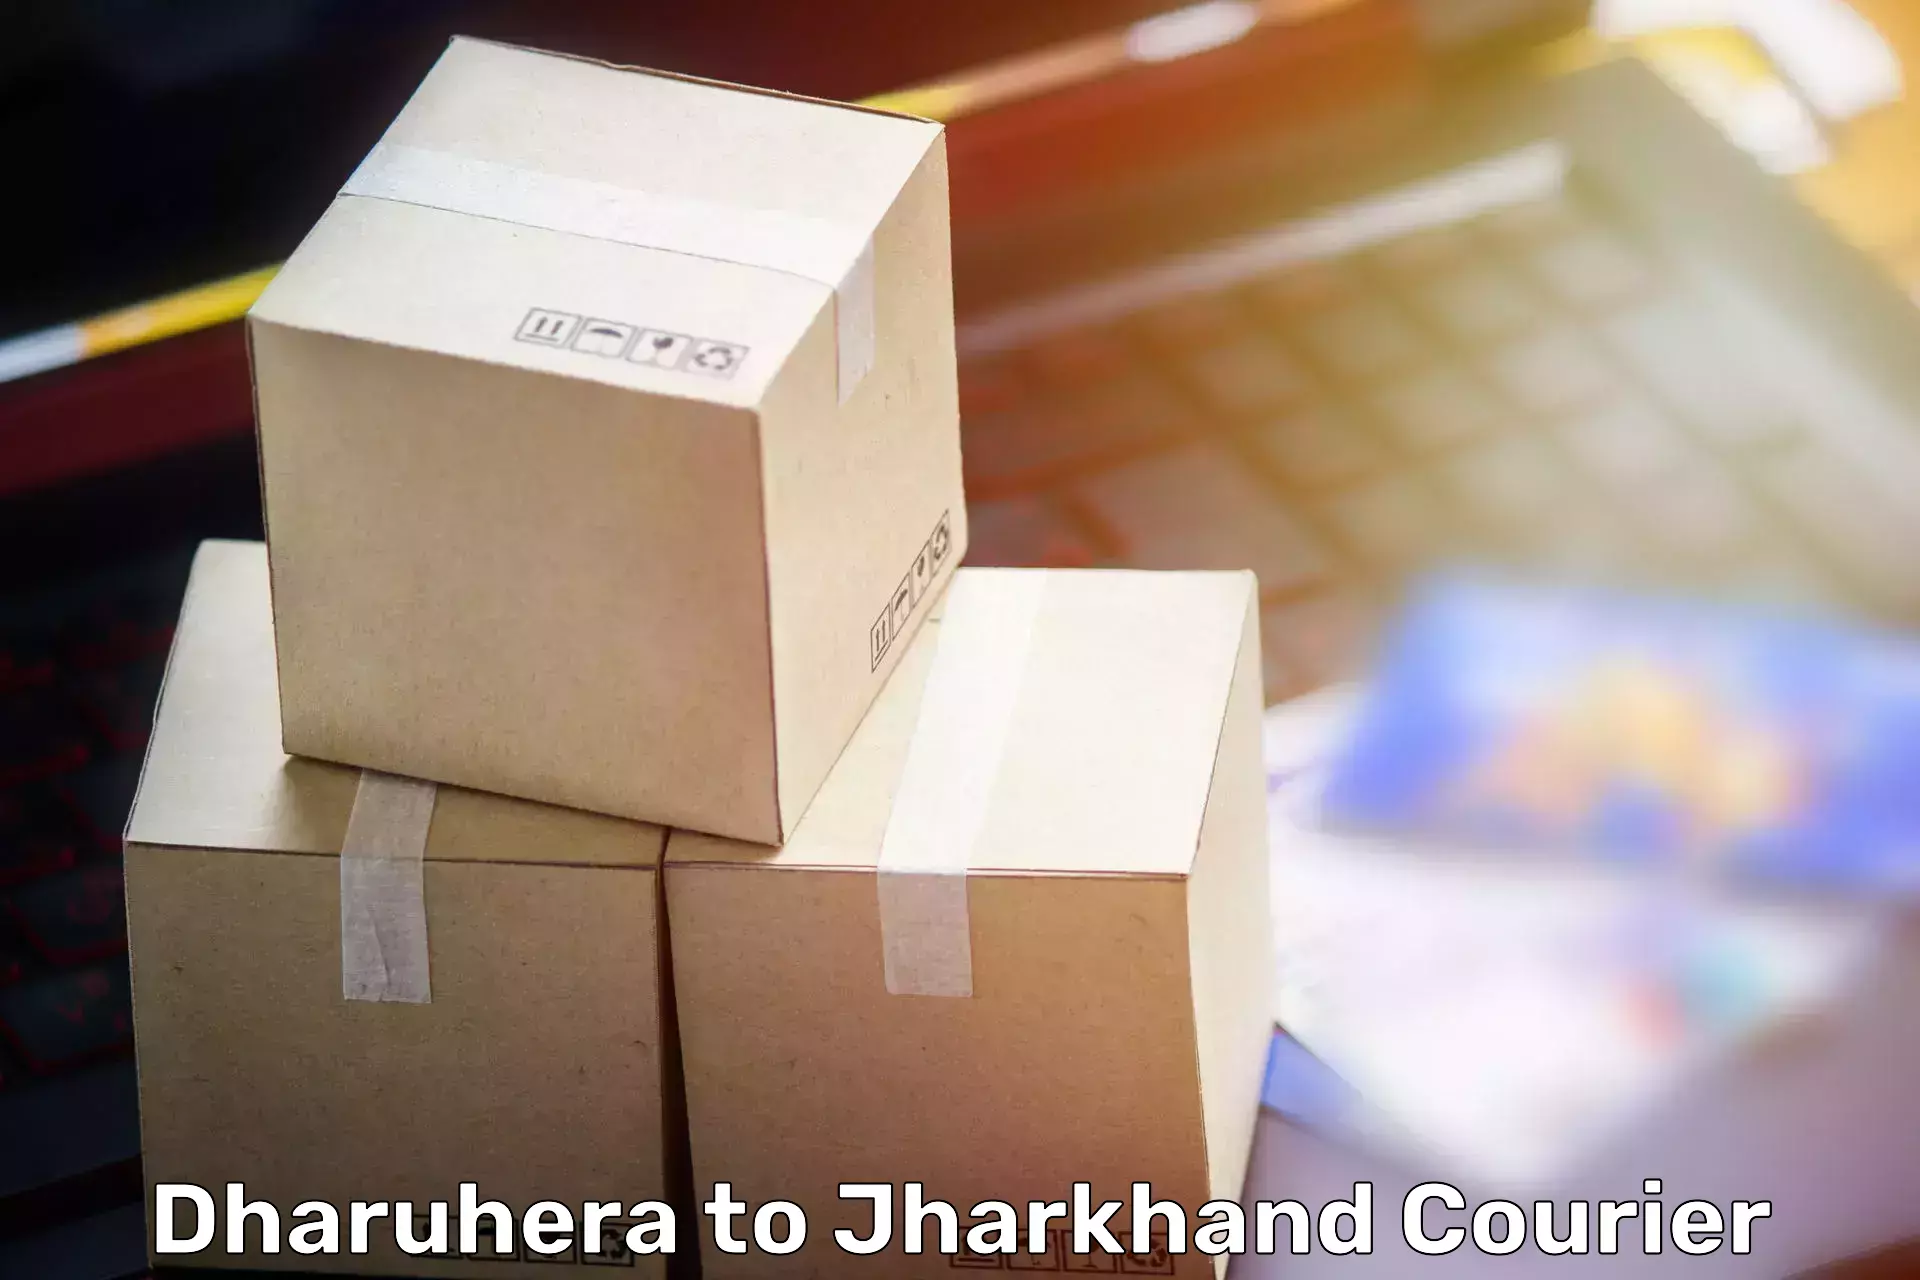 Furniture moving experts Dharuhera to Gobindpur